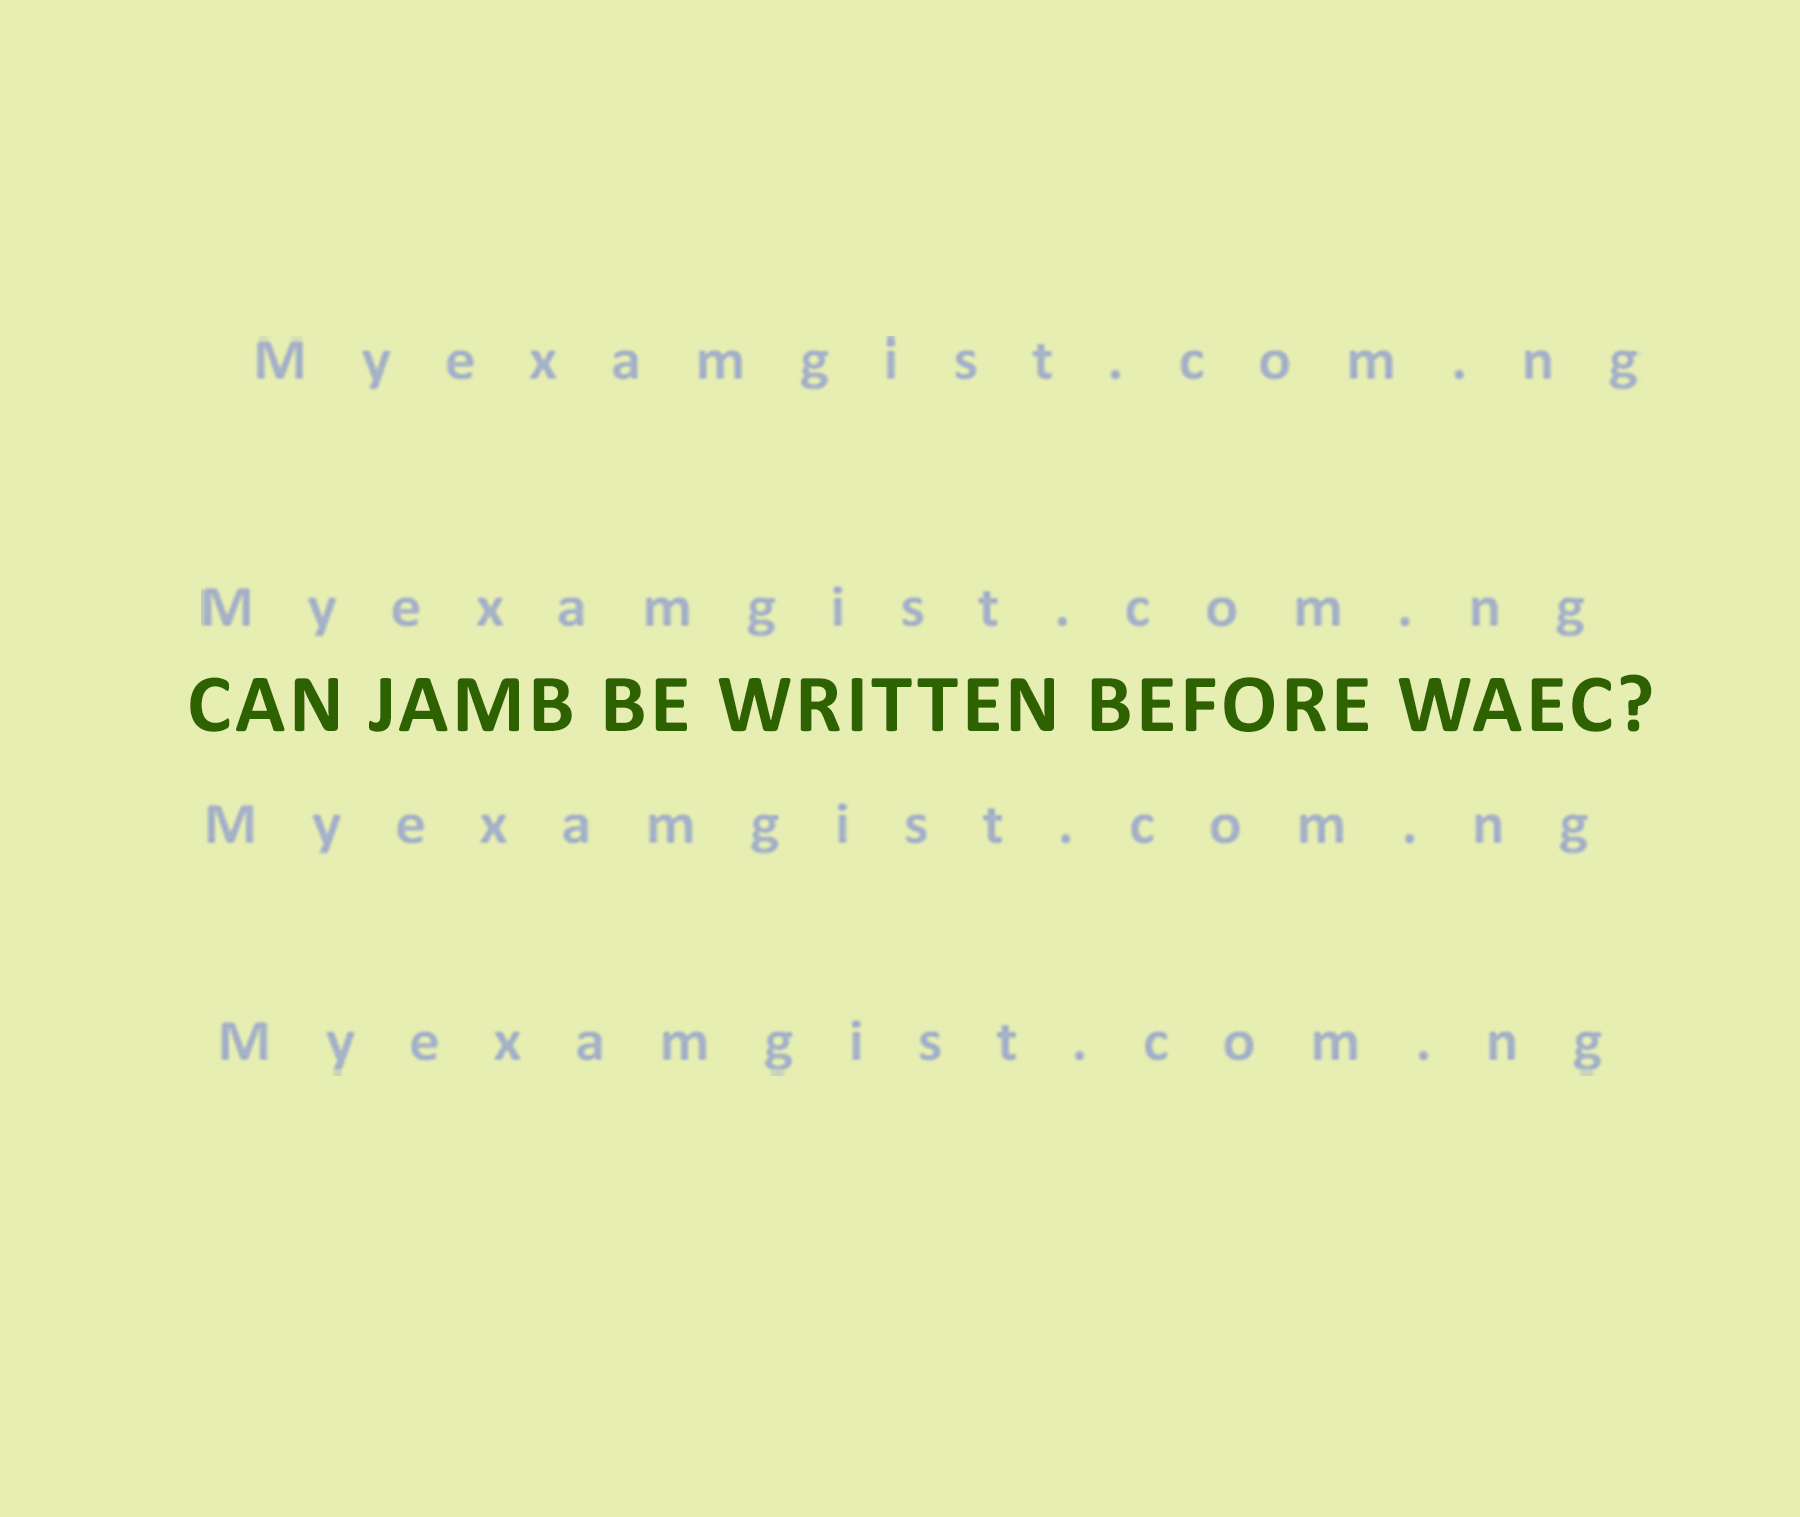 Can JAMB be written before WAEC?